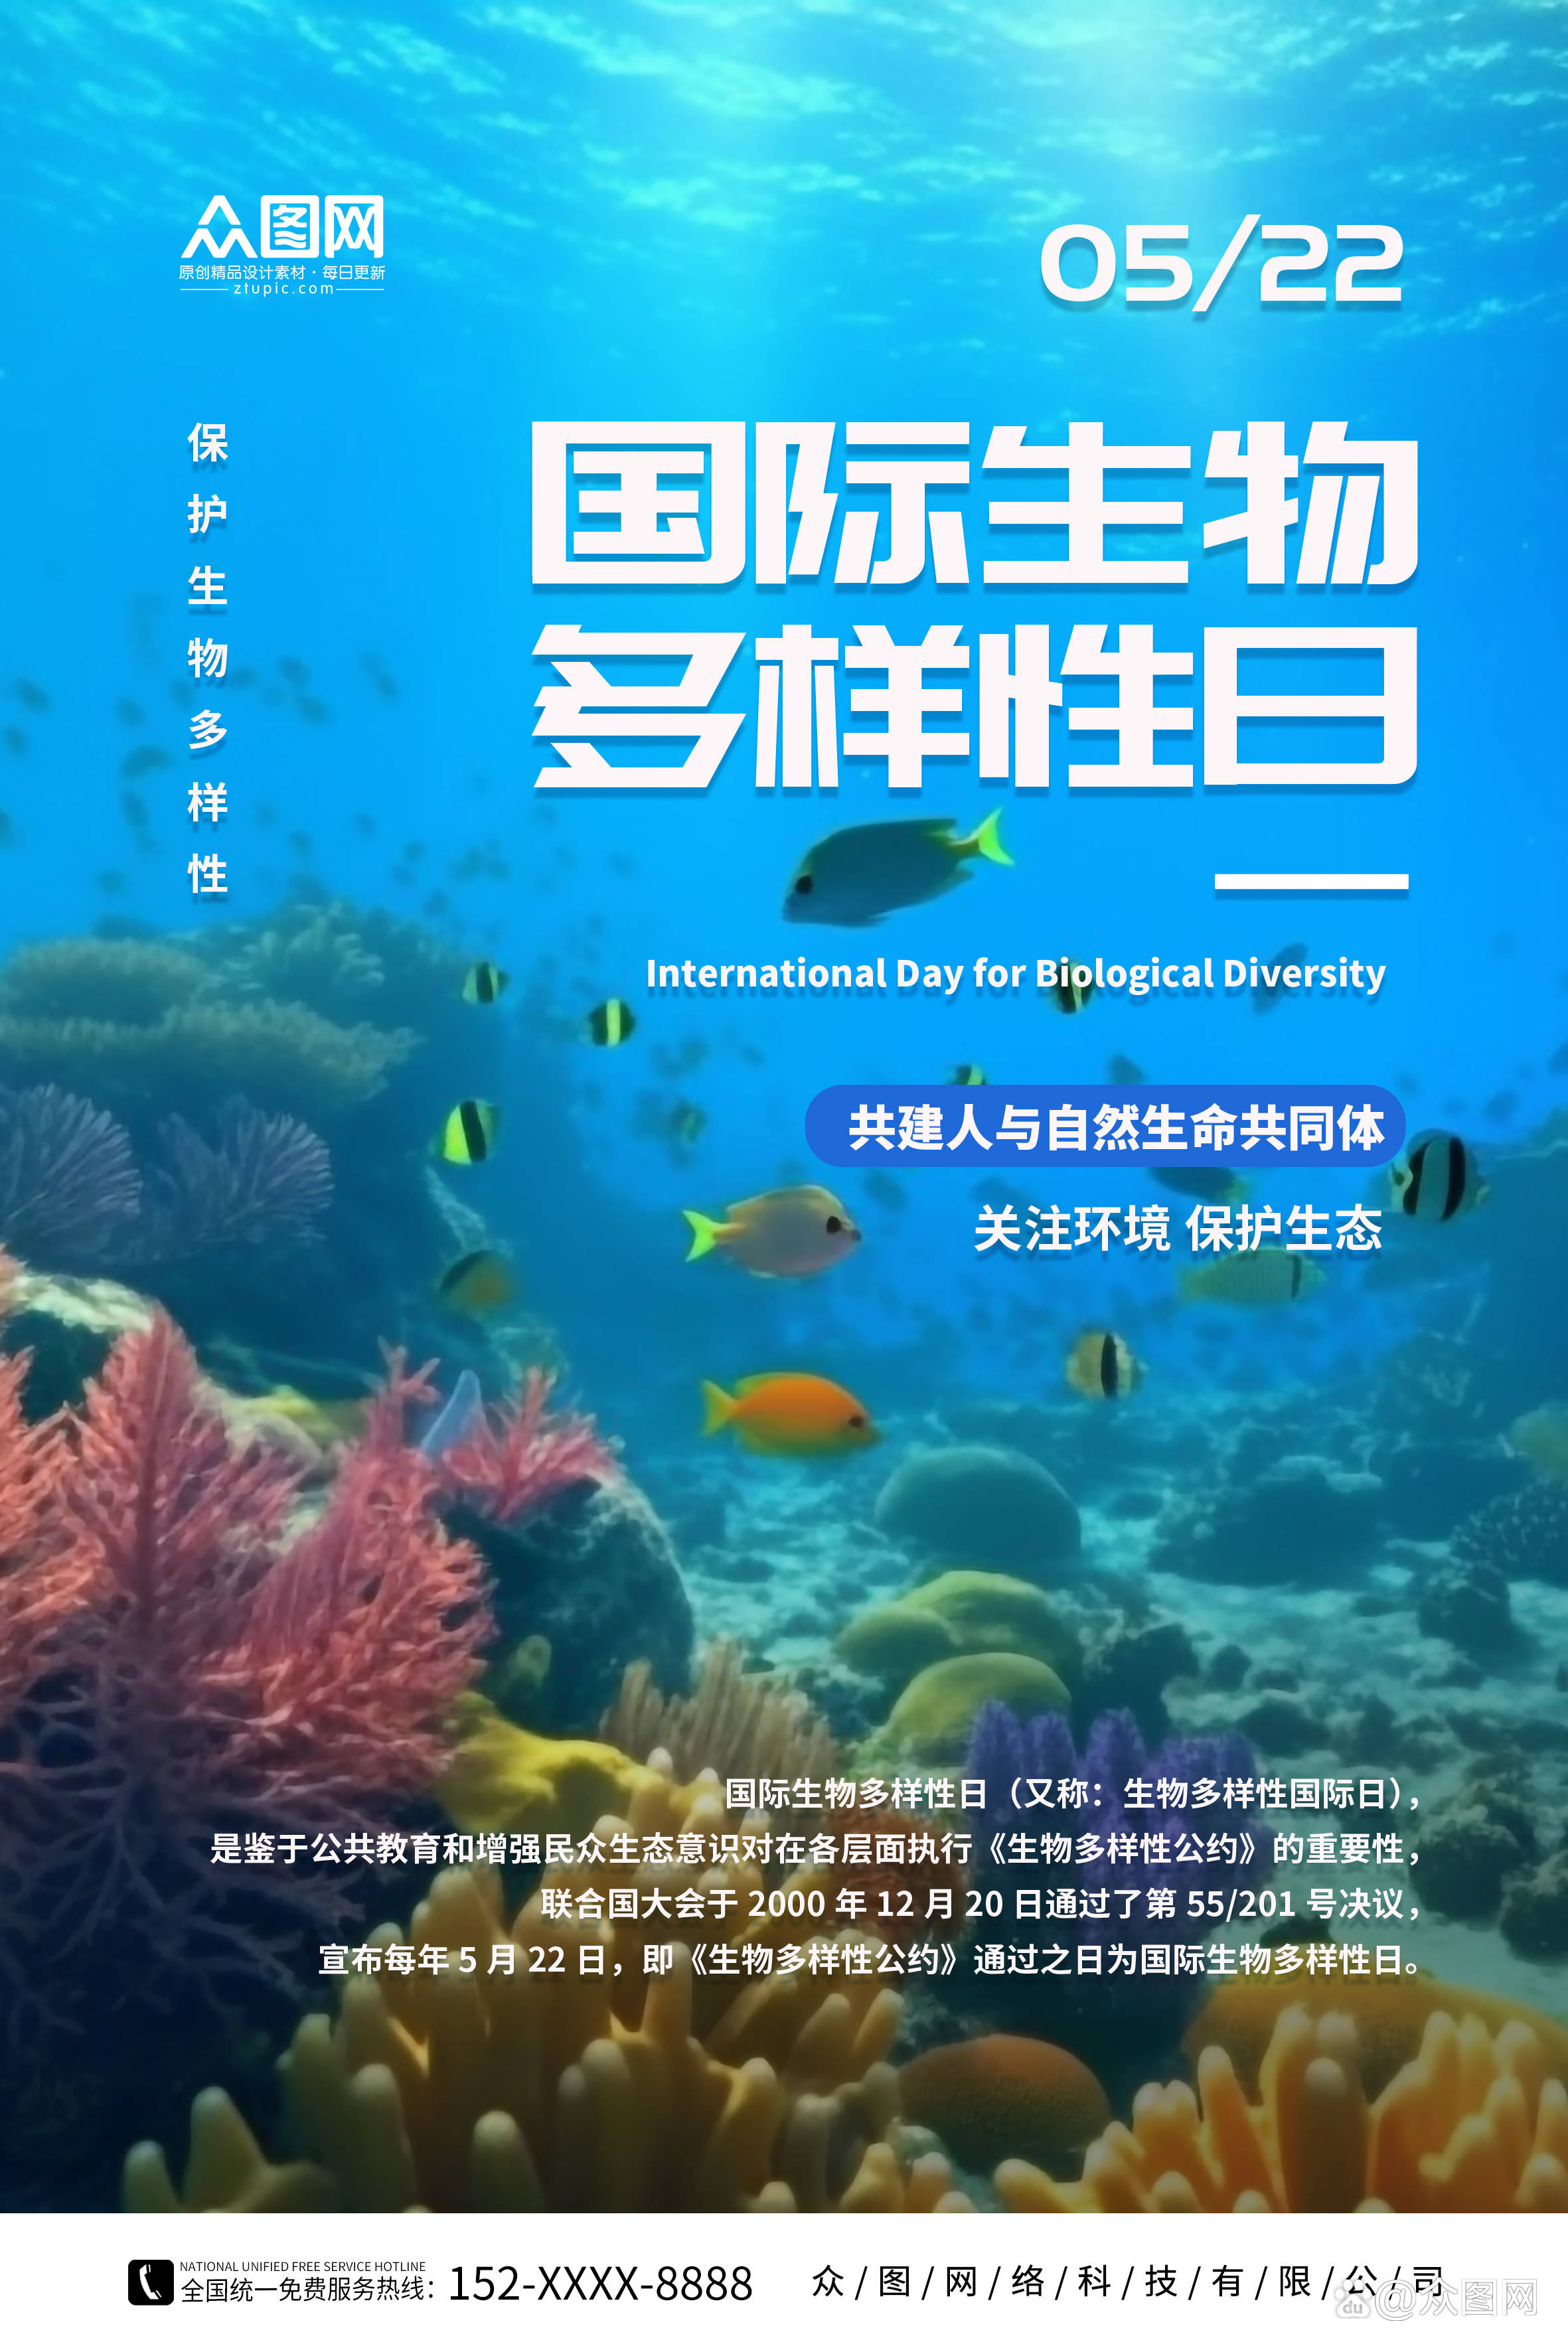 522国际生物多样性日主题活动海报